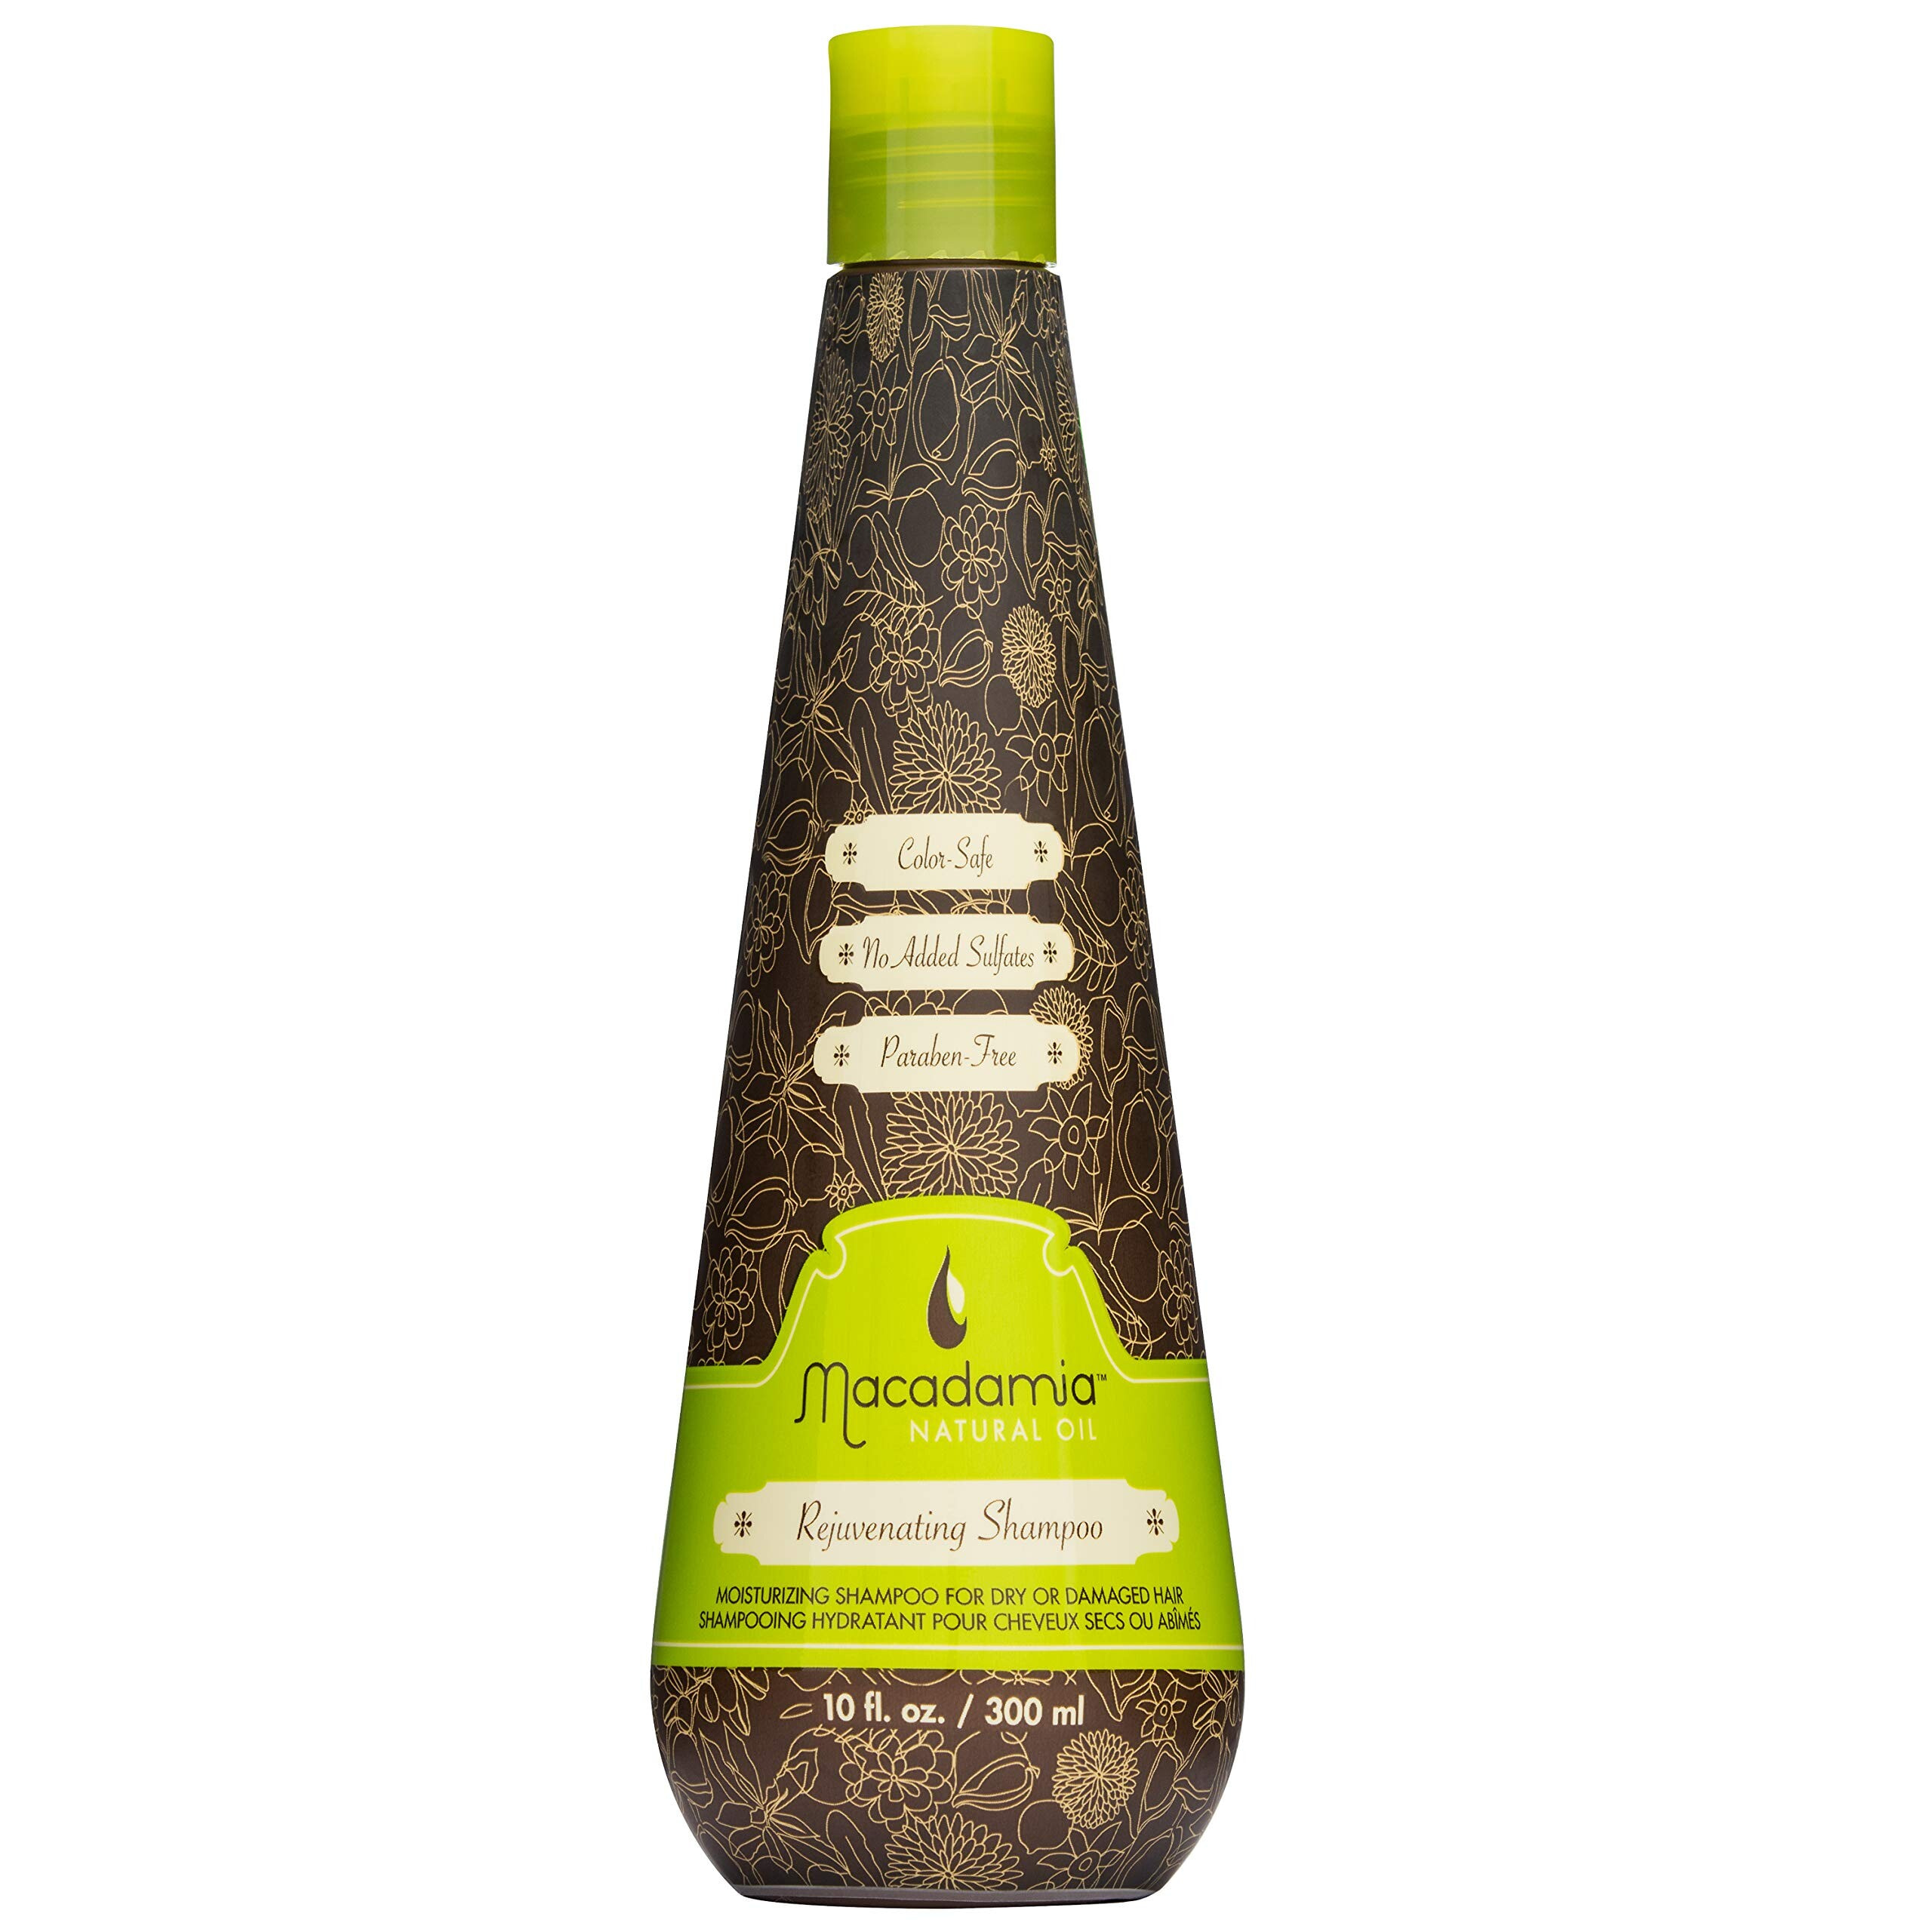 Macadamia Natural Oil Rejuvenating Shampoo Увлажняющий и восстанавливающий шампунь с маслом макадамии для сухих и поврежденных волос, без сульфатов